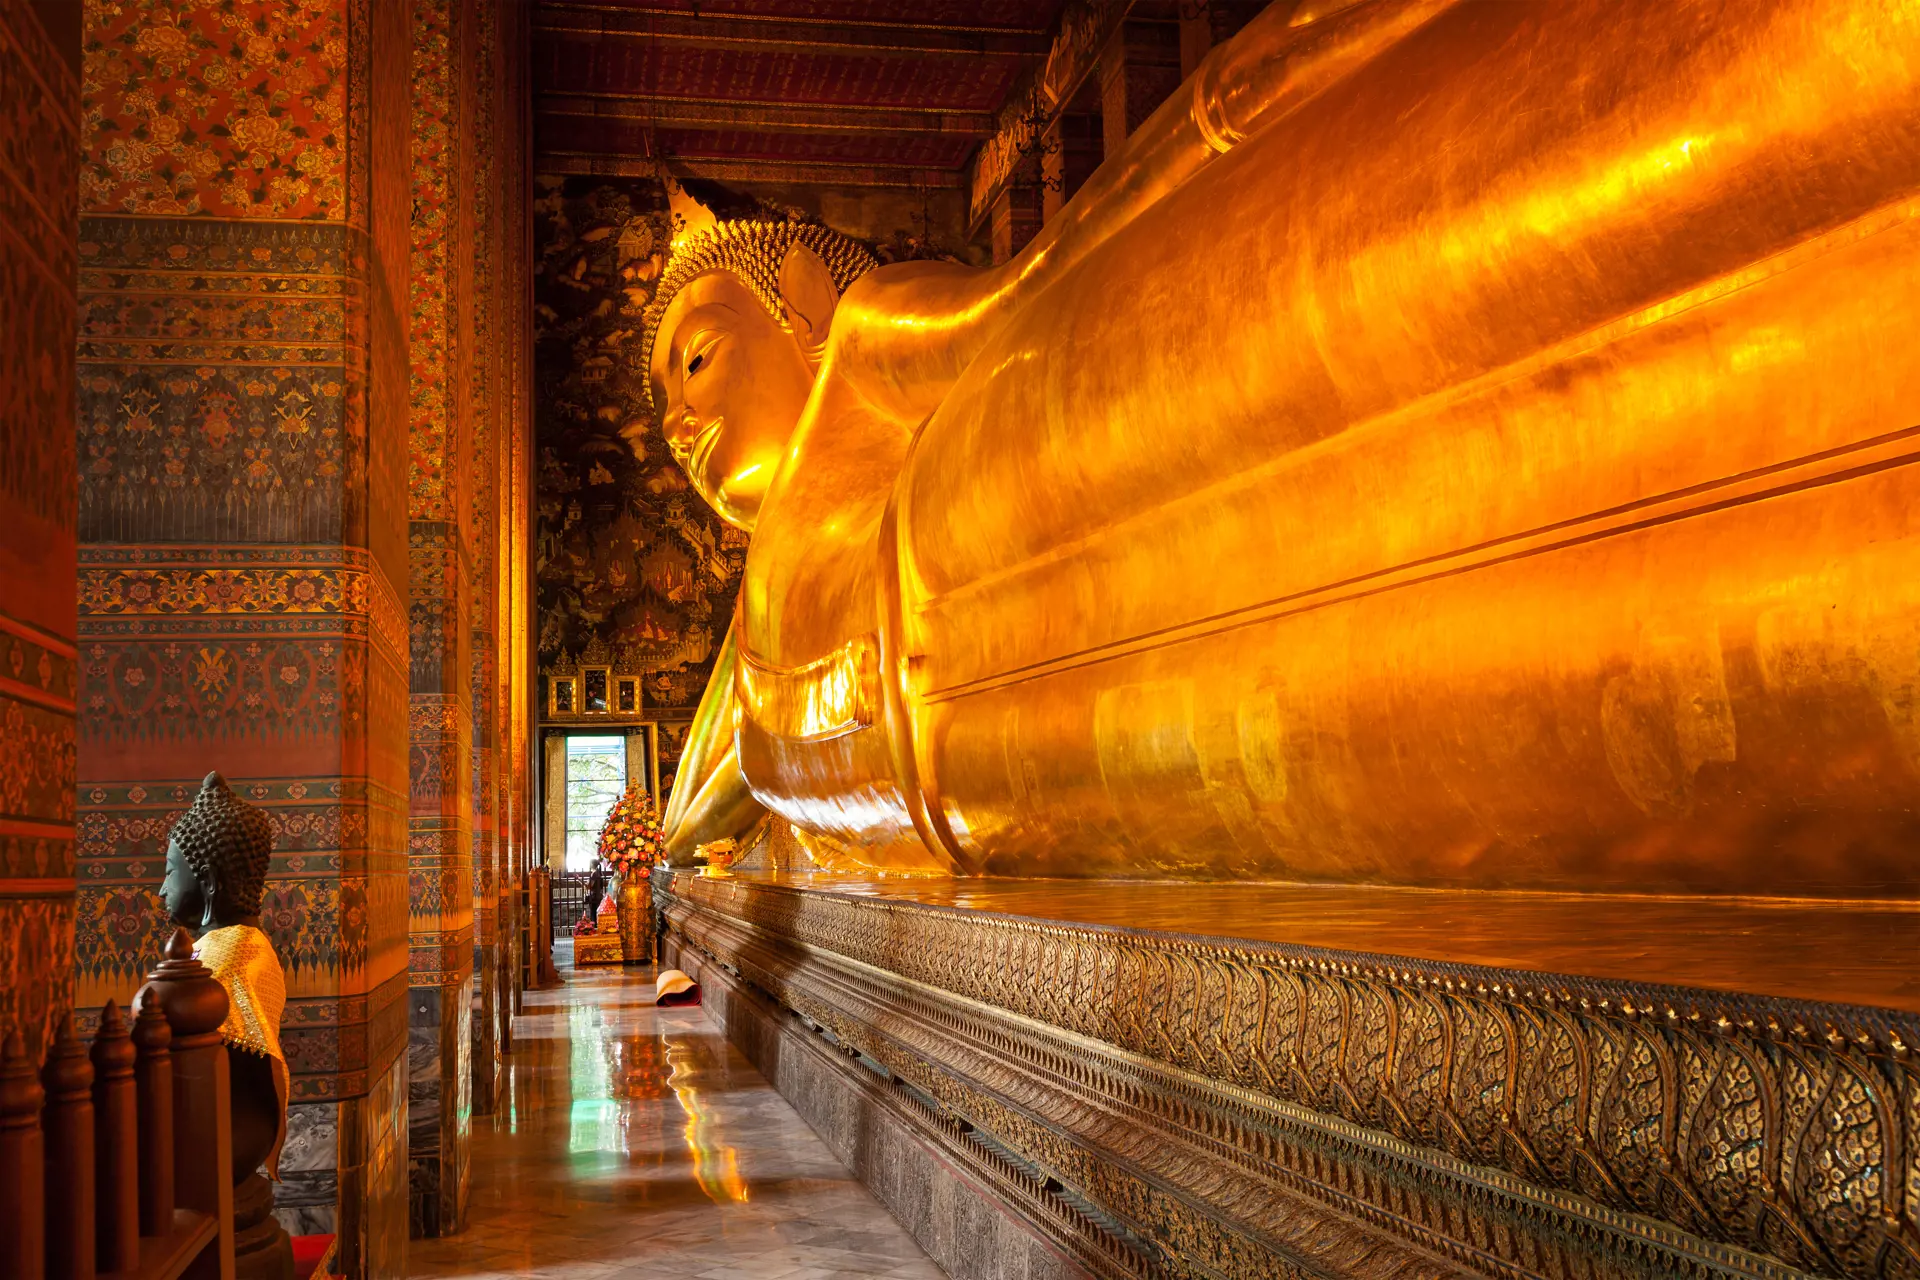 WAT PHO - Er et af Bangkoks ældste templer. Her finder I den enorme liggende buddha, Check Point Travel